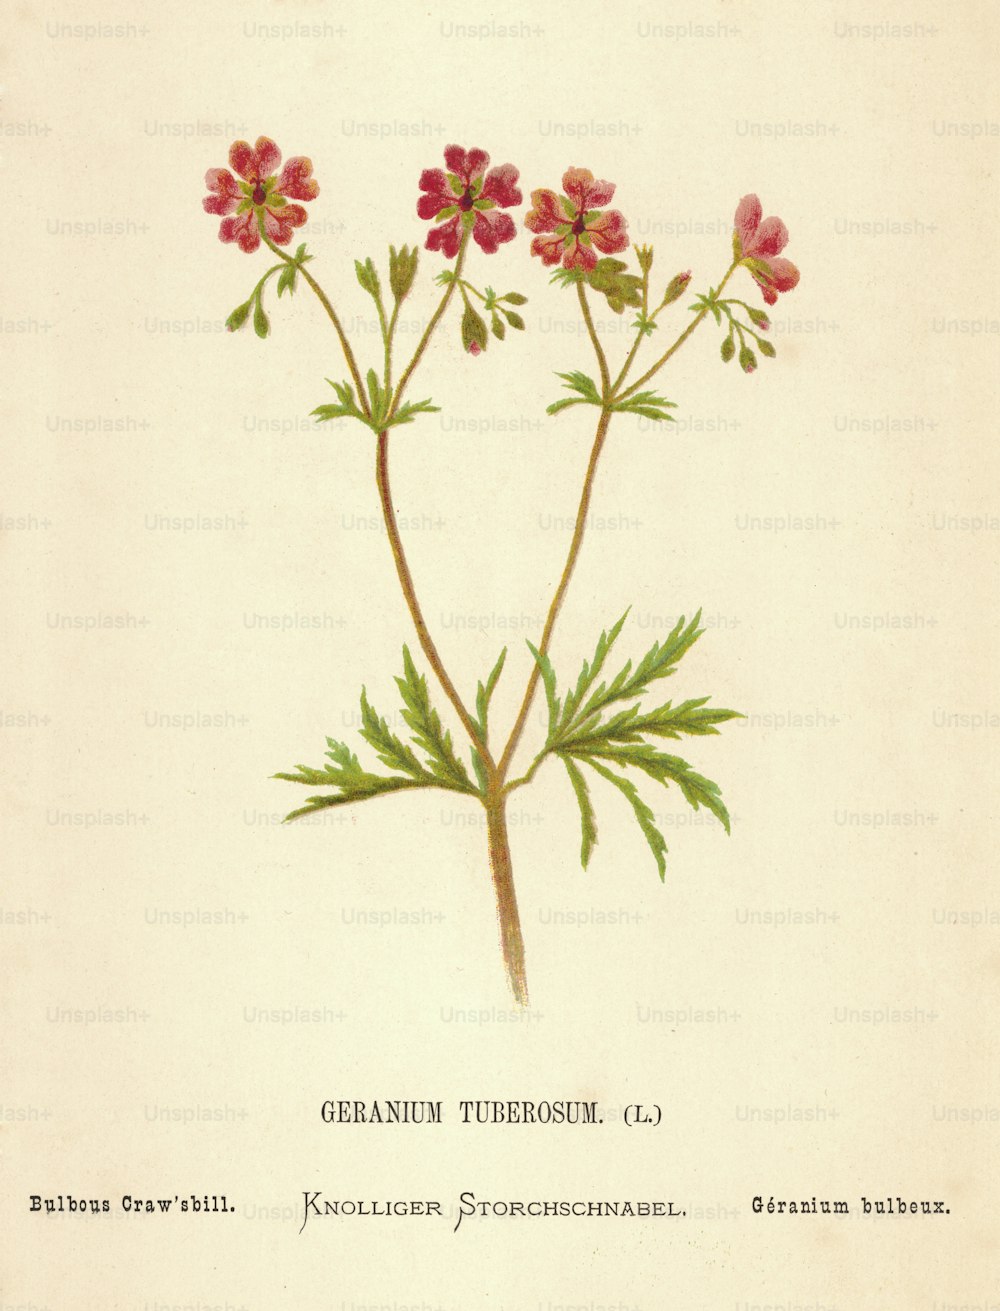 Um Geranium Tuberosum vermelho, ou Bulbous Craw'sbill, por volta de 1850. (Foto: Hulton Archive/Getty Images)